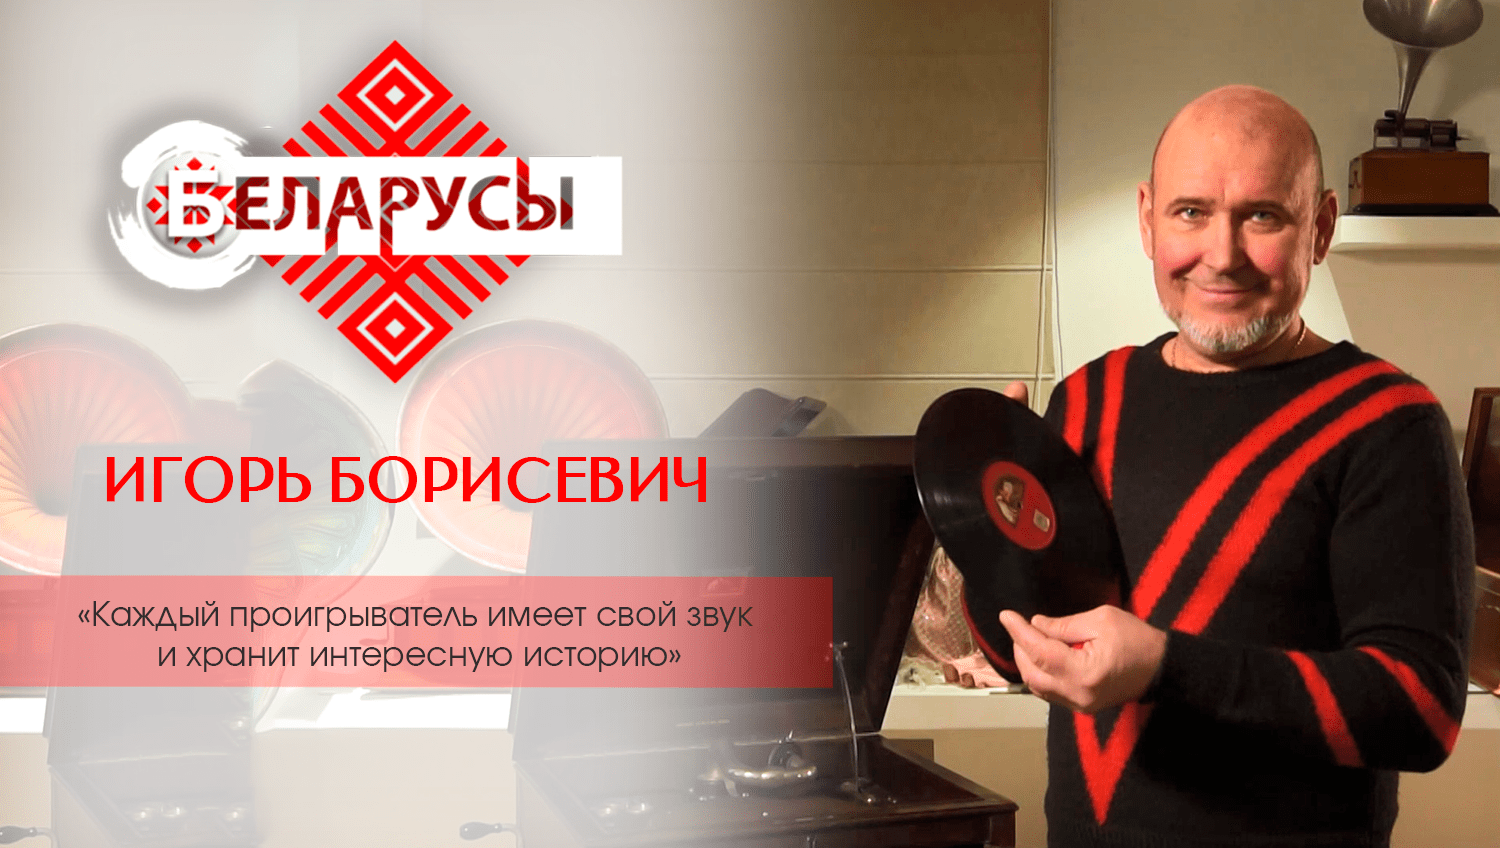 История в звуке и звук в истории. О владельце самой большой коллекции ретропроигрывателей в Беларуси